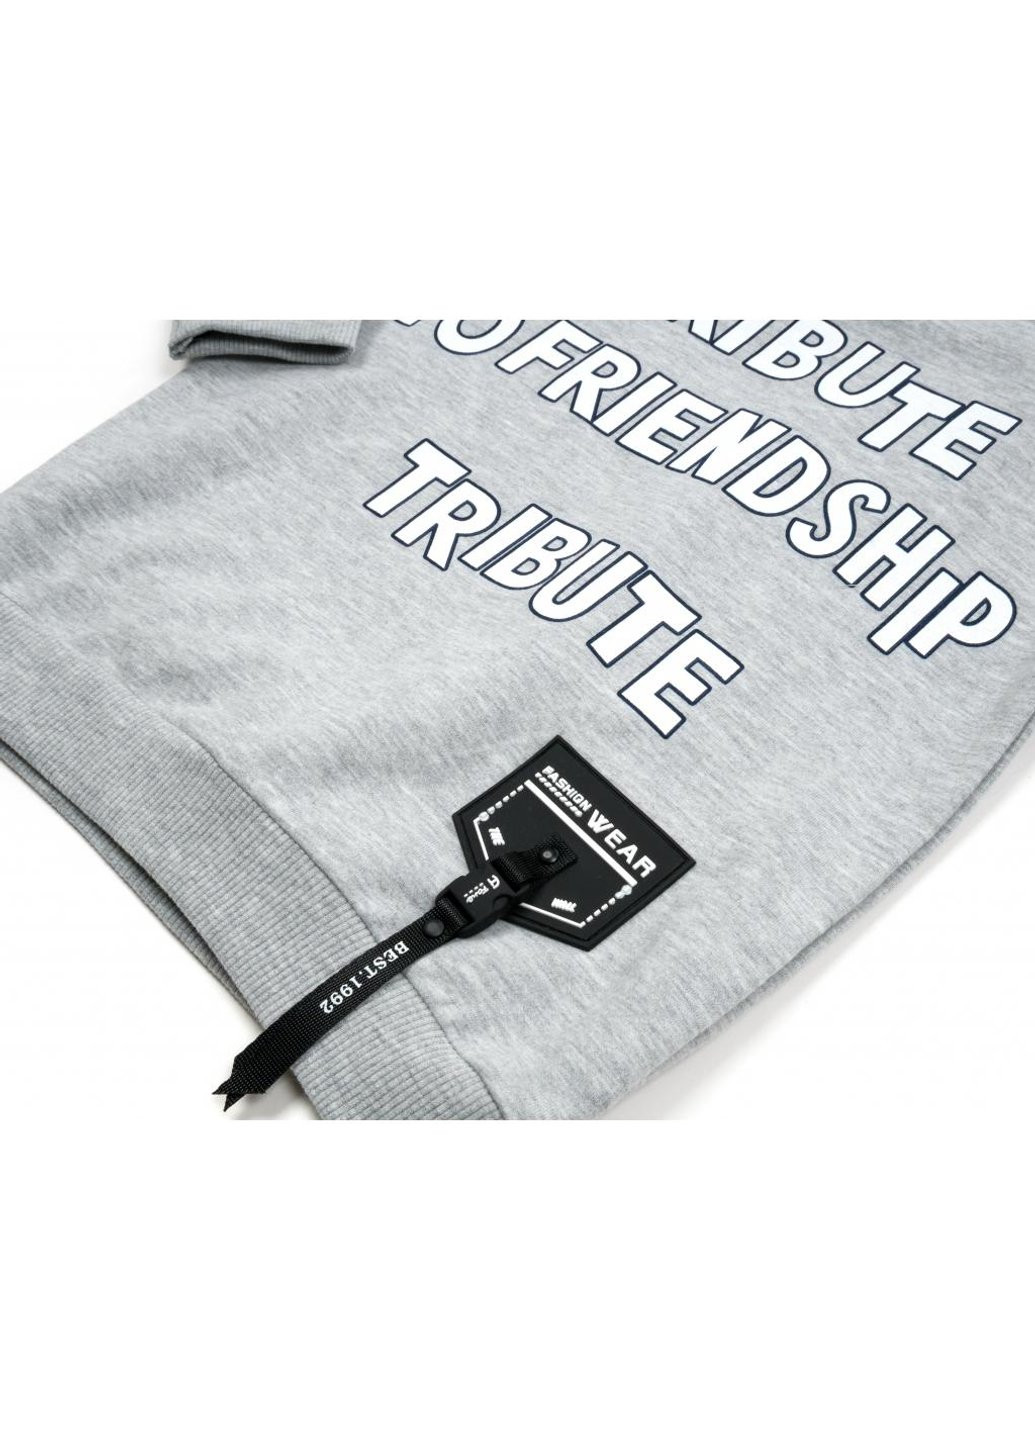 Серый демисезонный набор детской одежды "friendship" (14775-128b-gray) Breeze